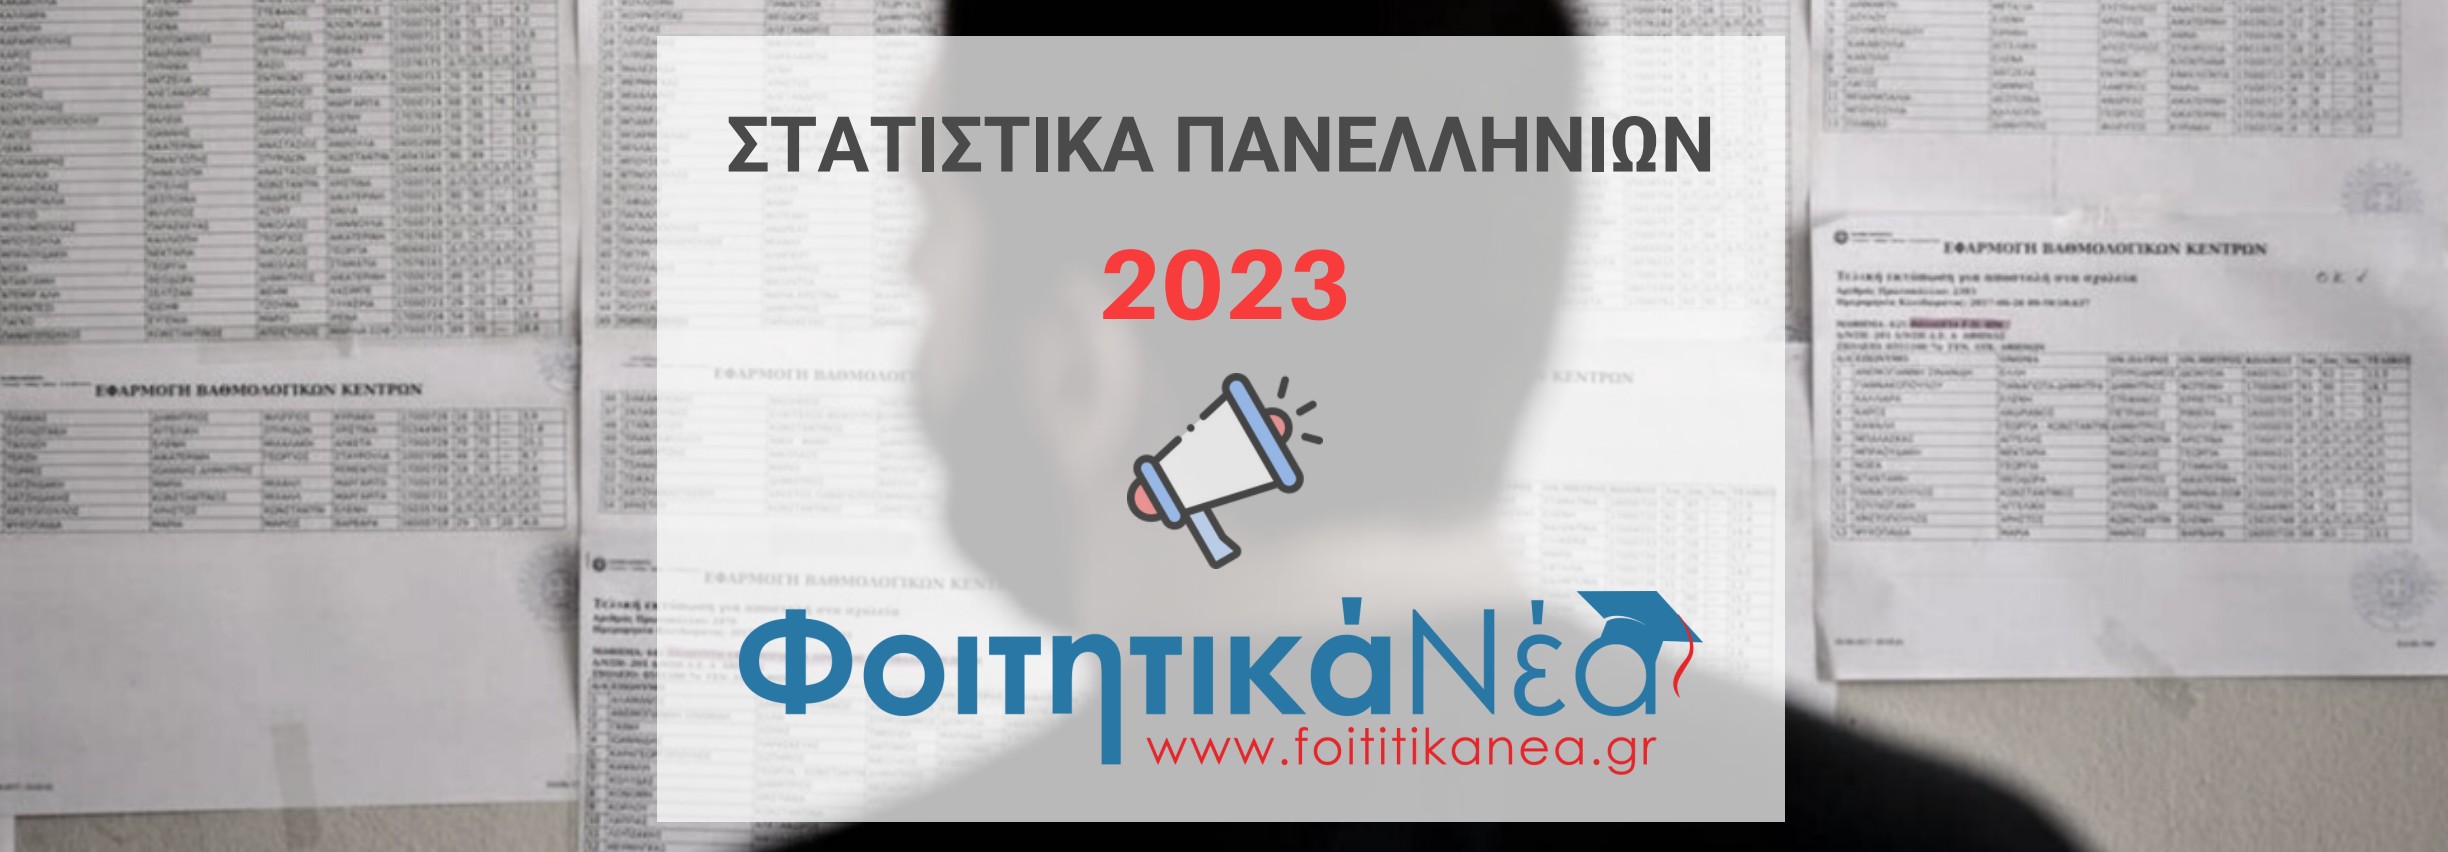 Στατιστικά Πανελληνίων 2023 (ΠΙΝΑΚΕΣ)